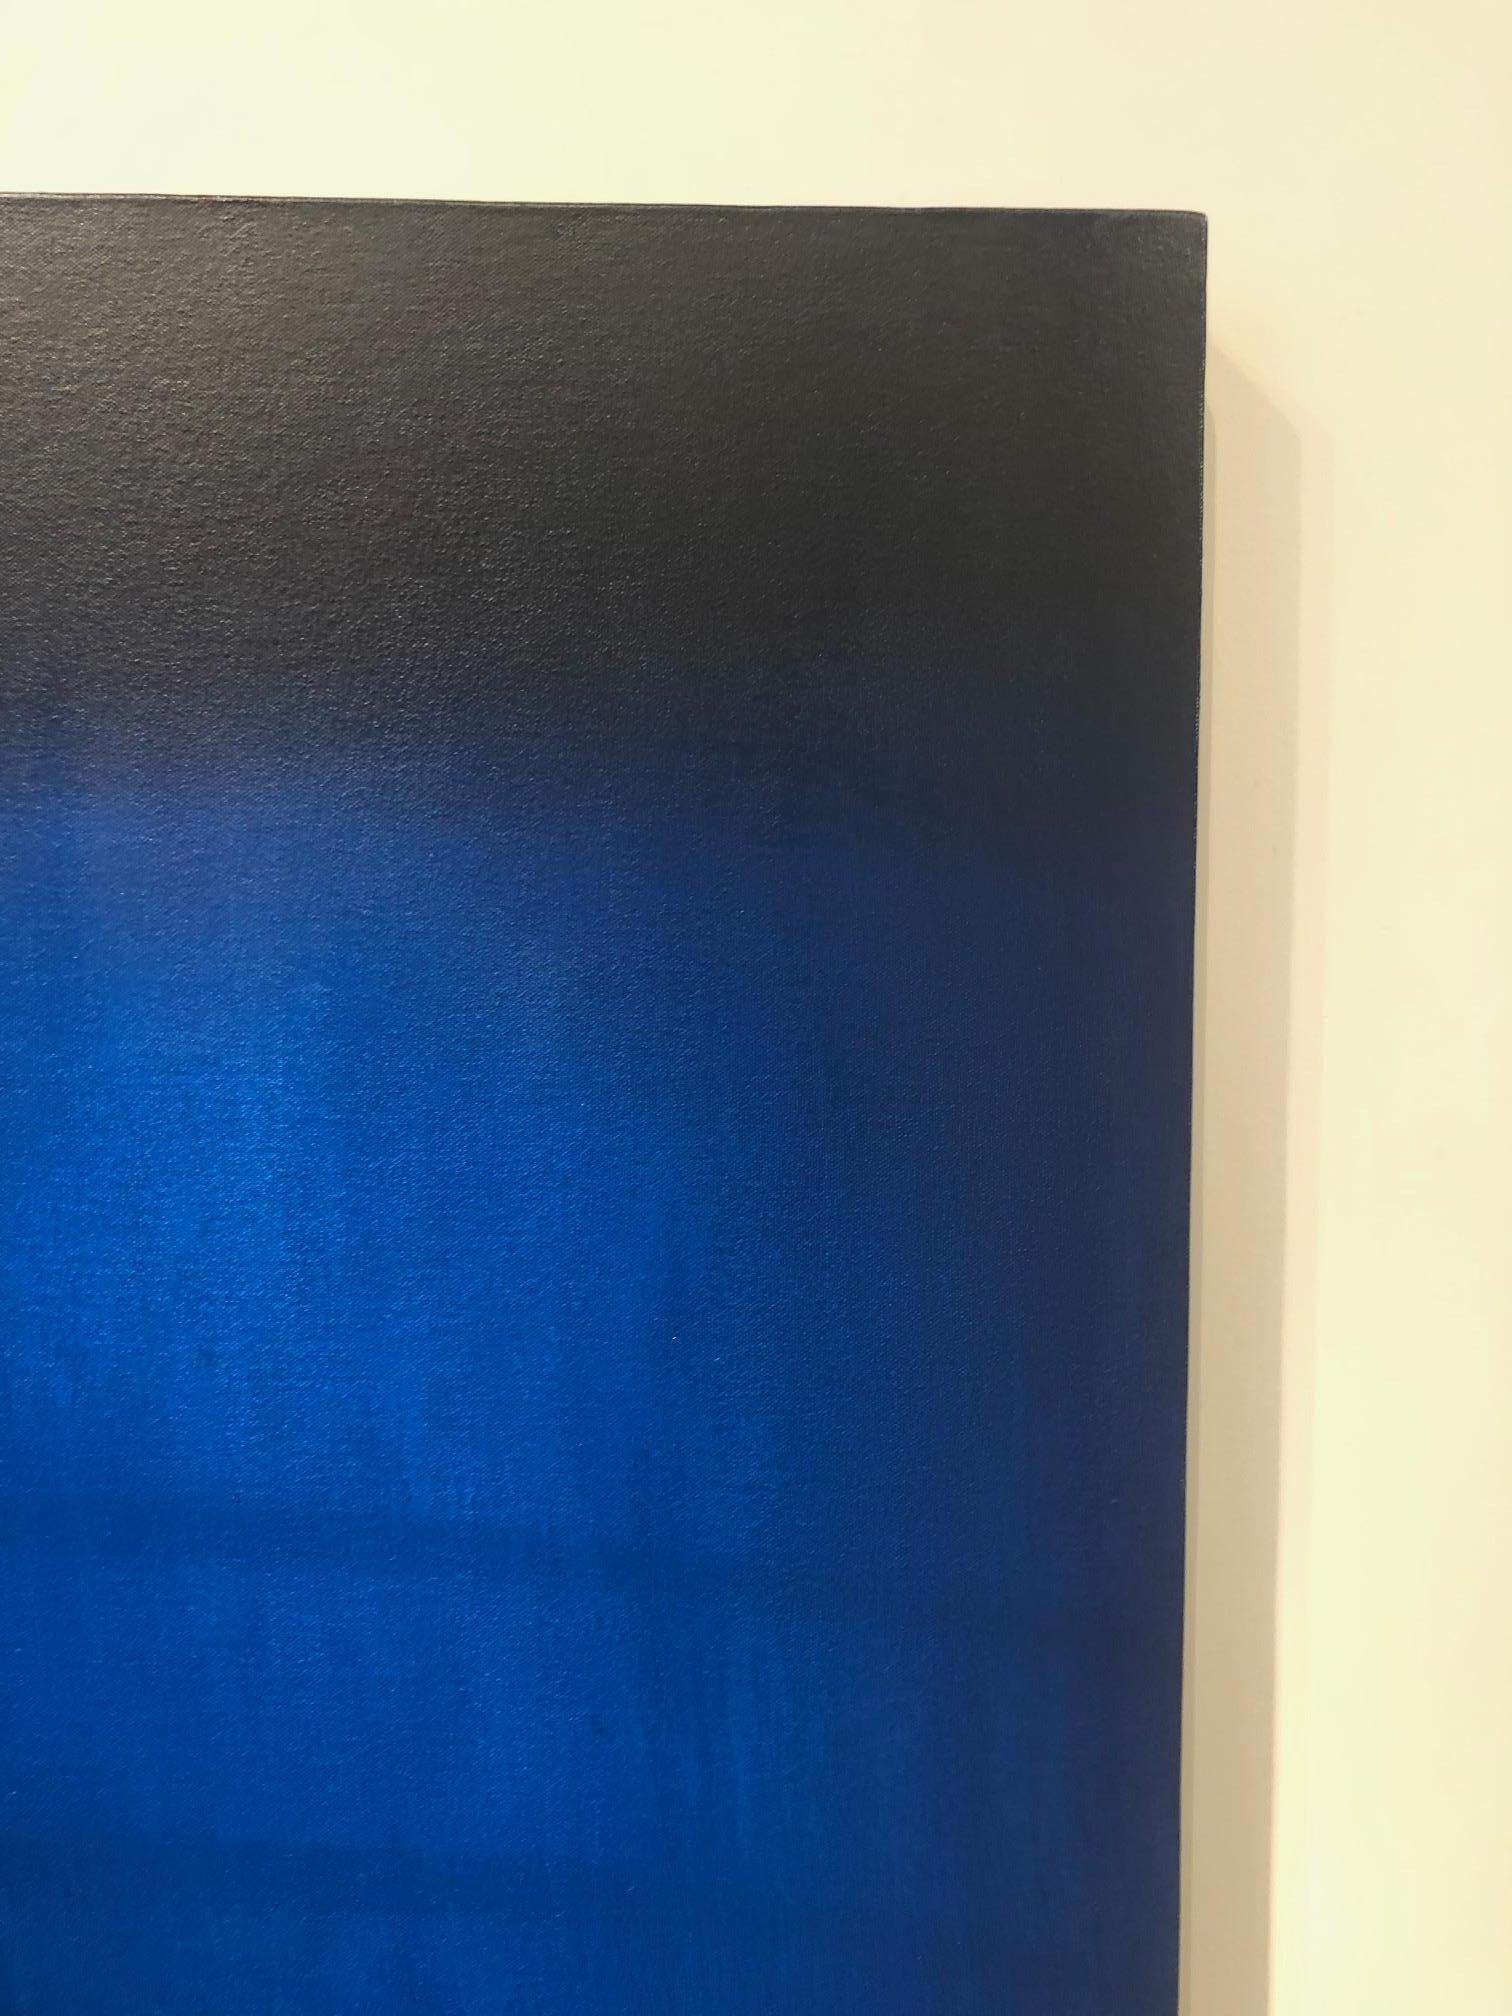 Blau steht im Mittelpunkt dieses abstrakten Gemäldes in Öl auf Leinwand der Künstlerin Anne Subercaseaux, deren glänzende Ölgemälde in Form von gegenständlichen, fragmentarischen Darstellungen zeitgenössischer Architektur, einschließlich städtischer